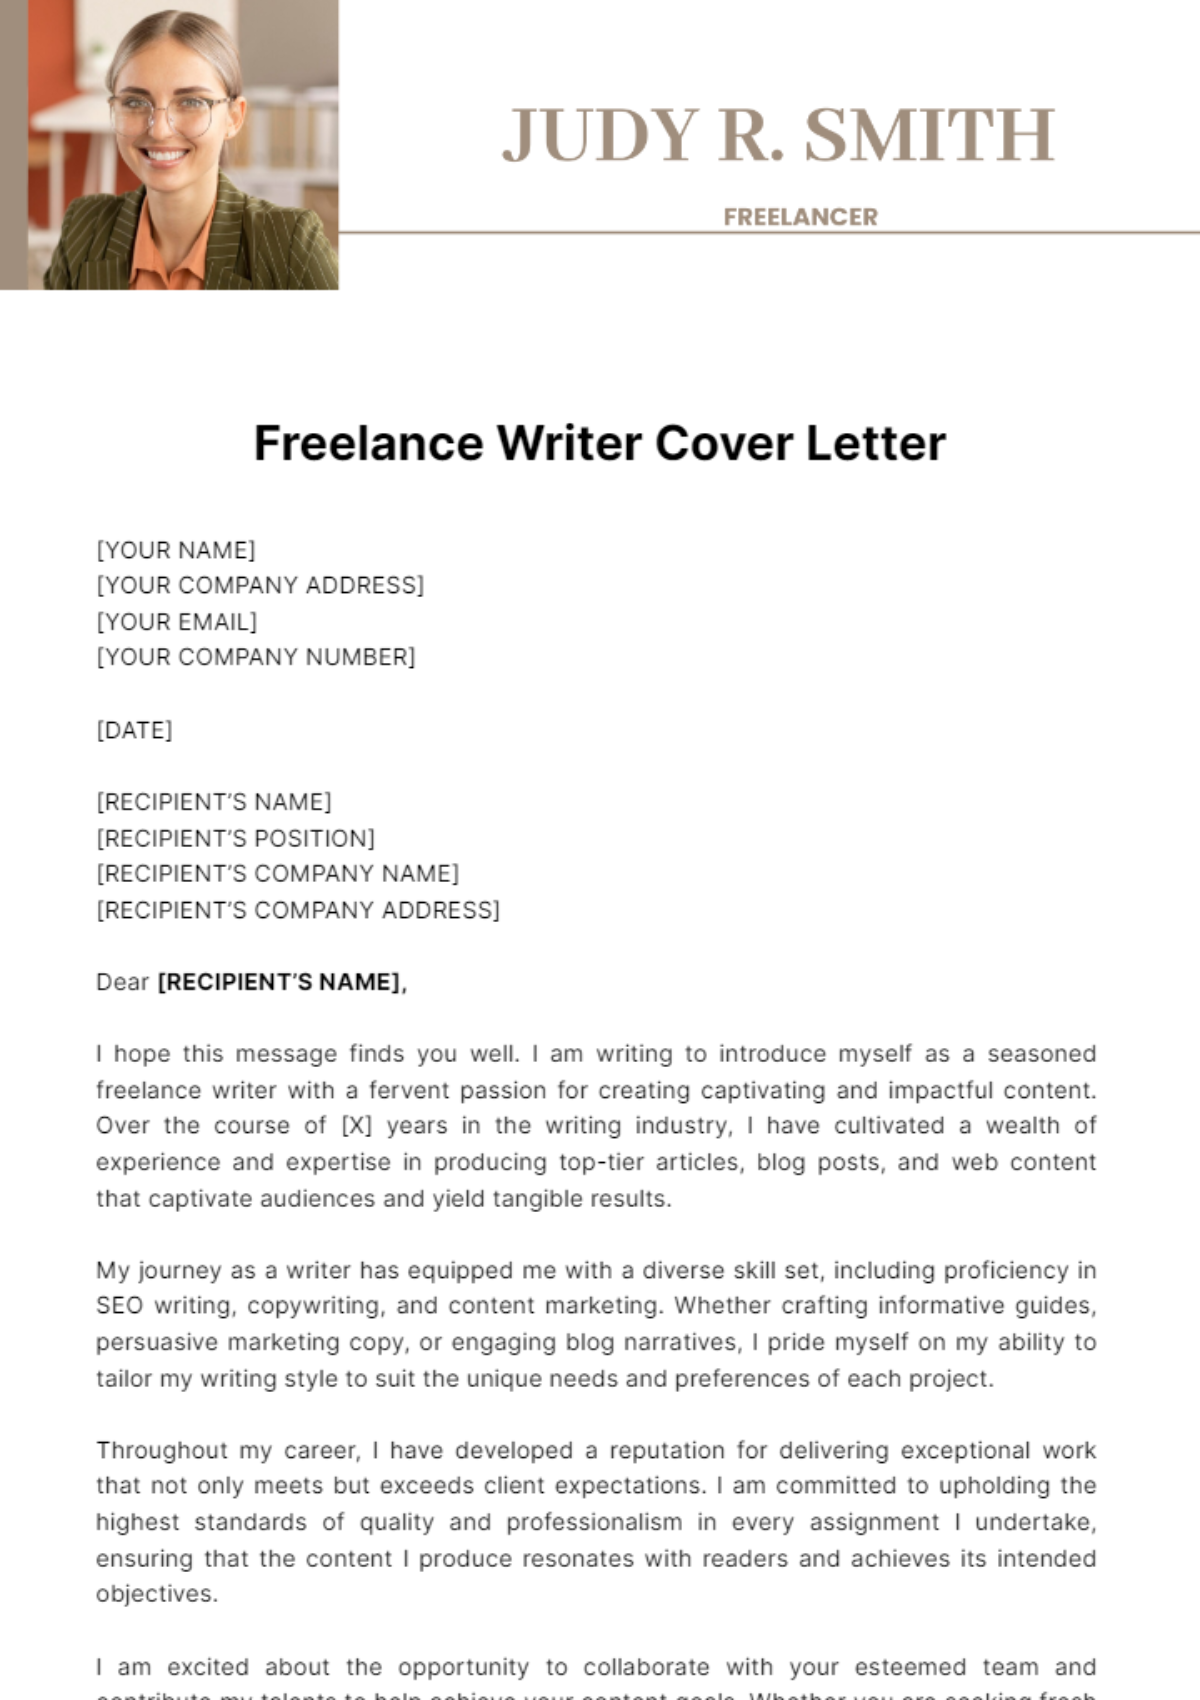 Freelance Writer Cover Letter Template